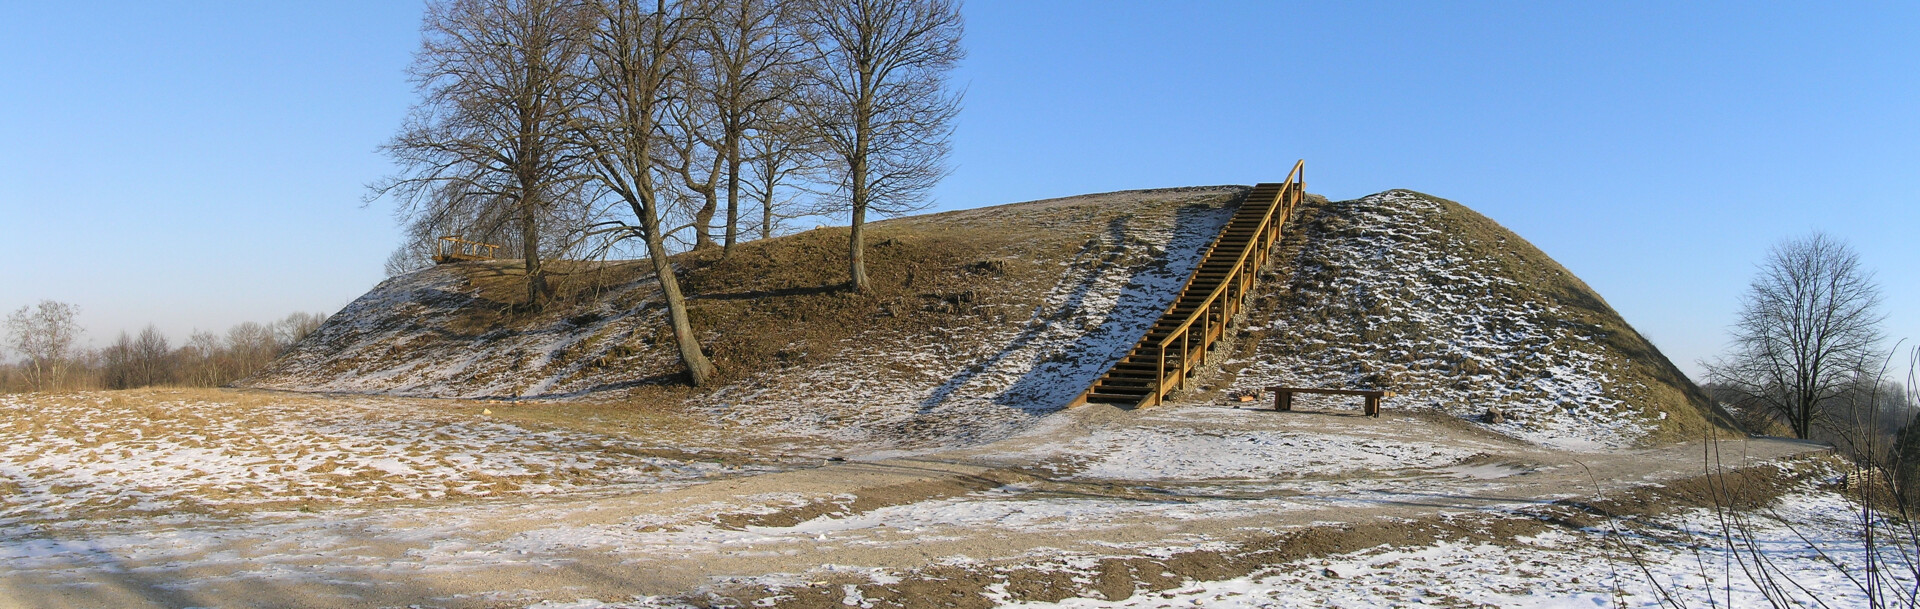 2006-aisiais Bakainių piliakalnis įrašytas į išskirtinę vertę turinčių kultūros paveldo vietovių sąrašą. ARCHYVŲ nuotr. 